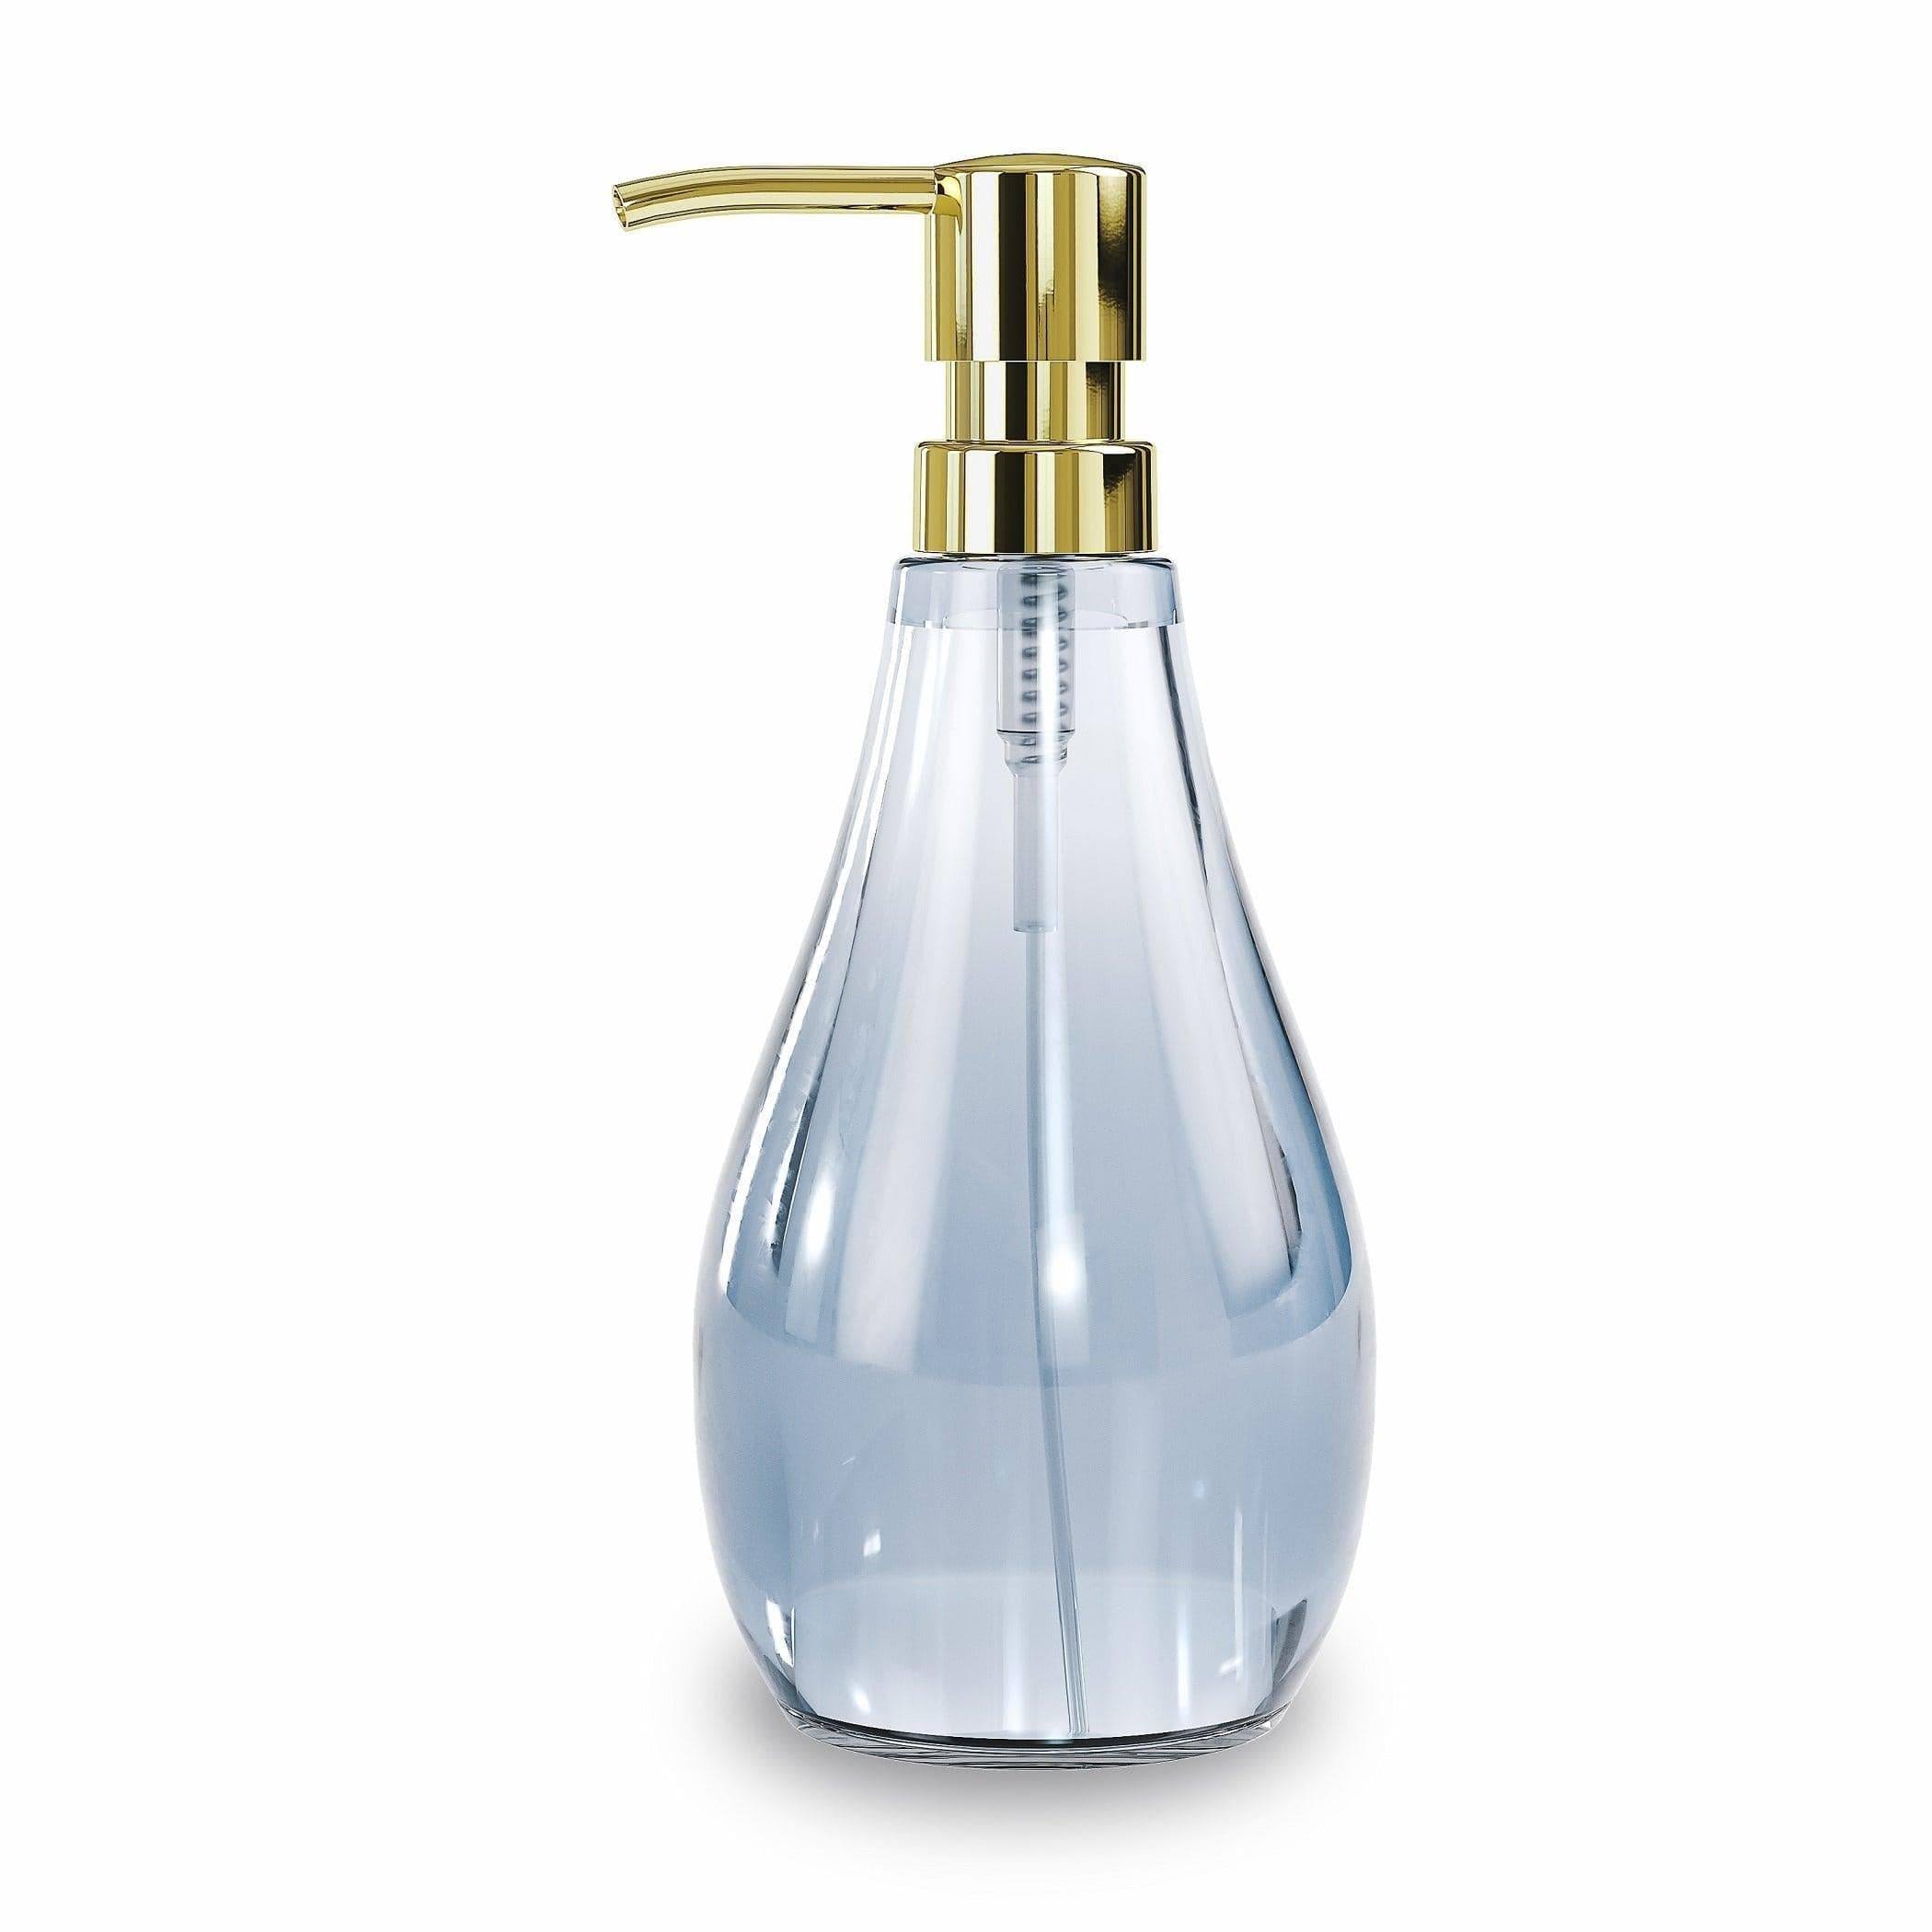 Umbra Droplet Soap Dispenser - Denim Blue